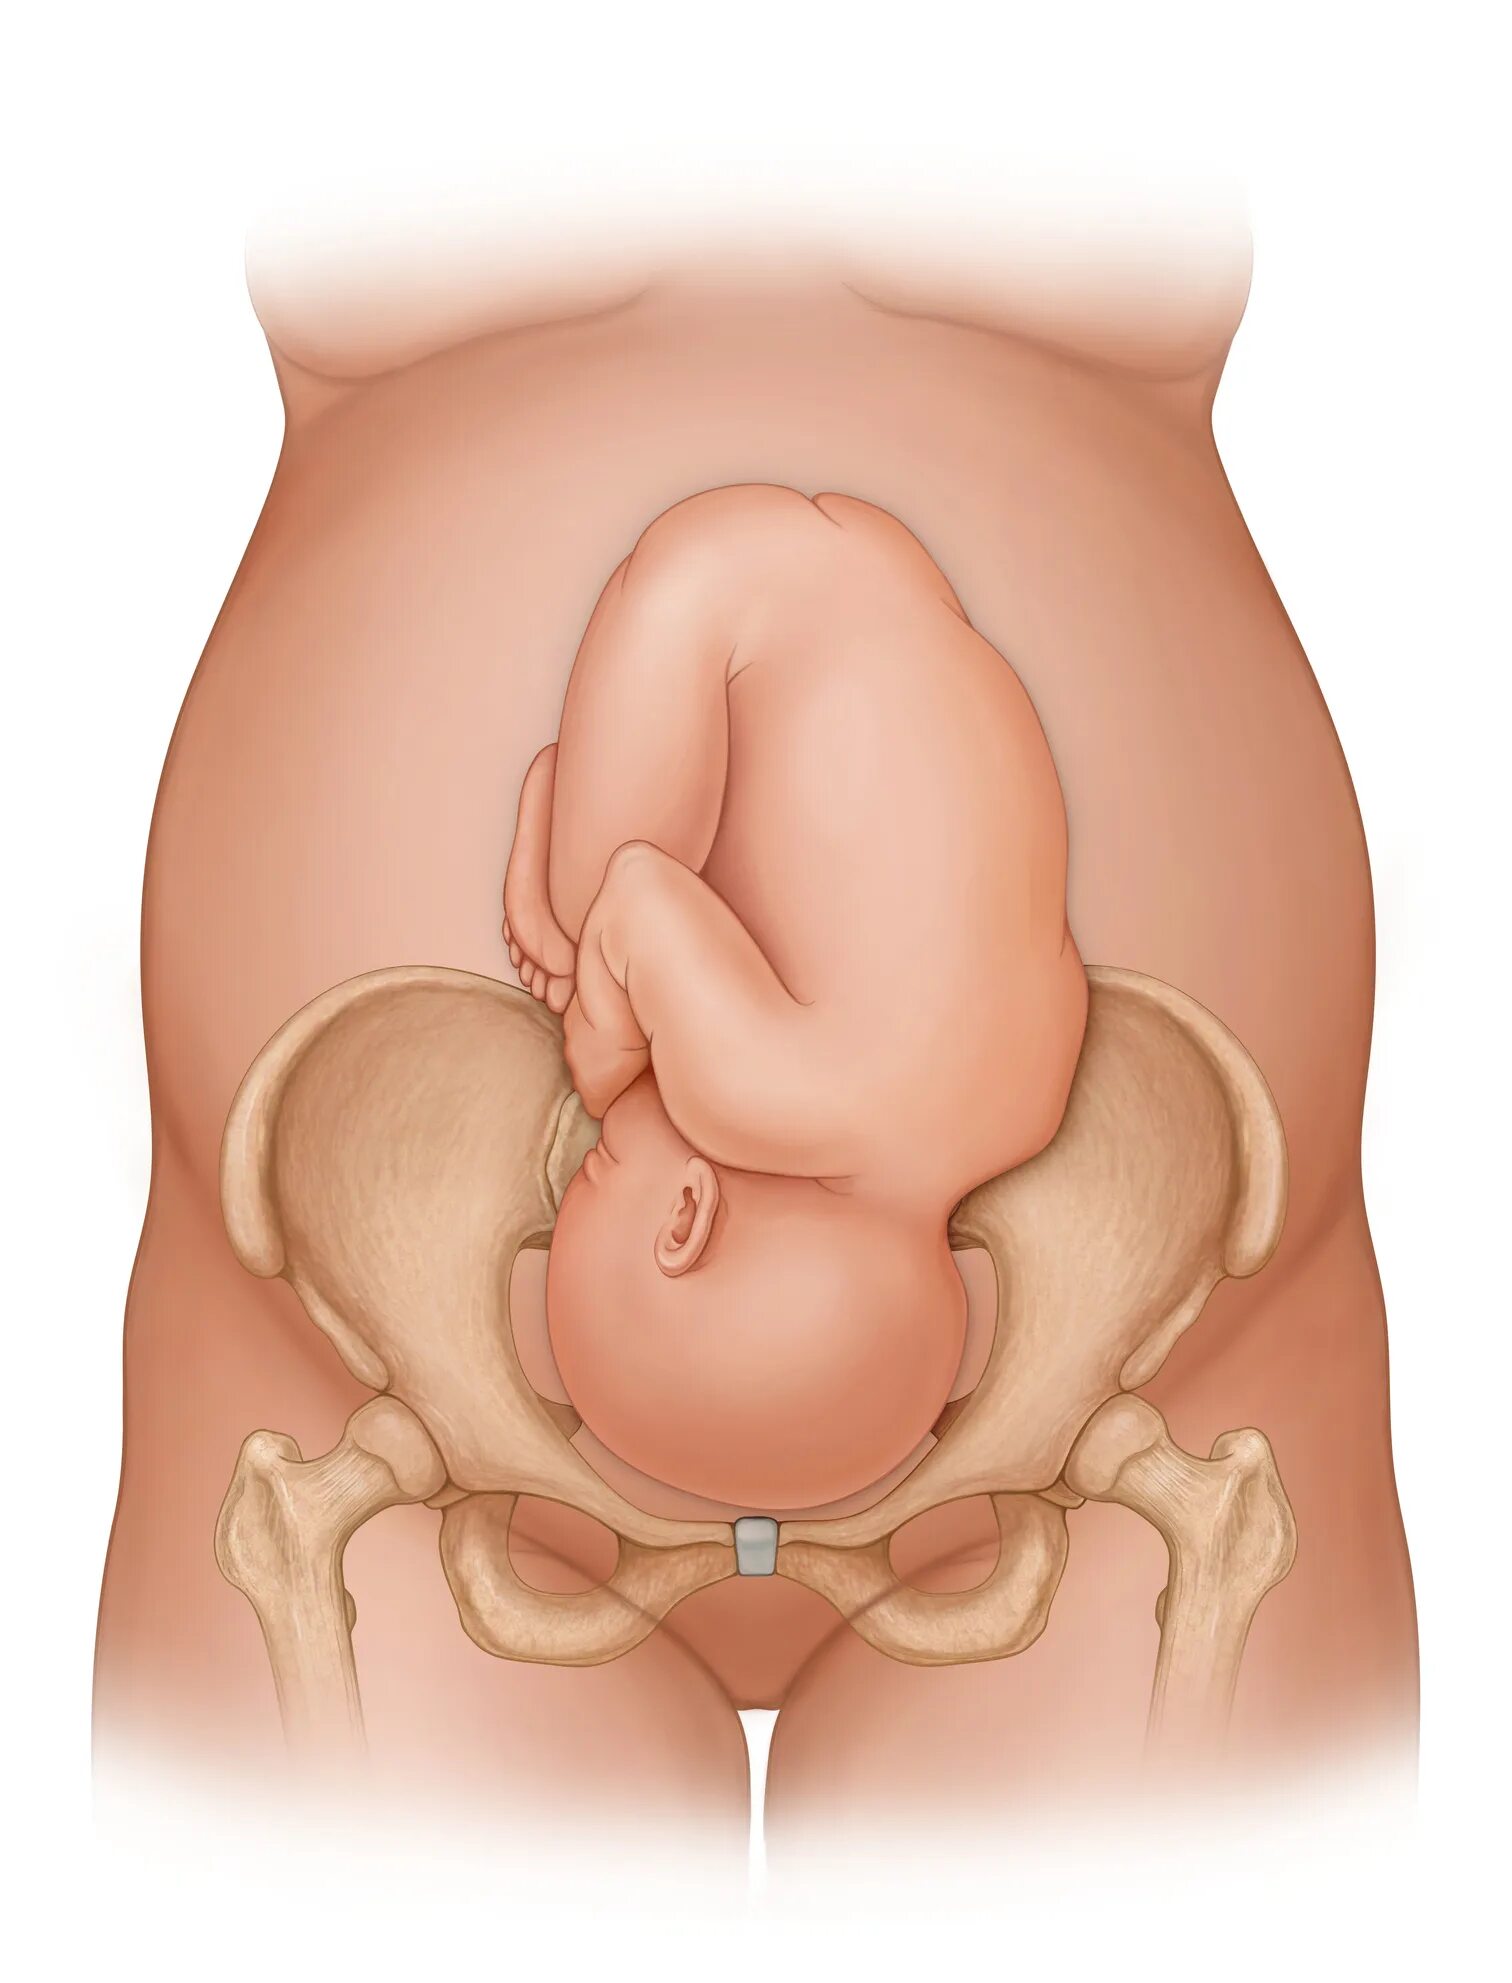 Лобковые кости при беременности. Расширение таза при родах. Расширение таза при беременности. Тазовые кости при родах. 36 недель тазовое